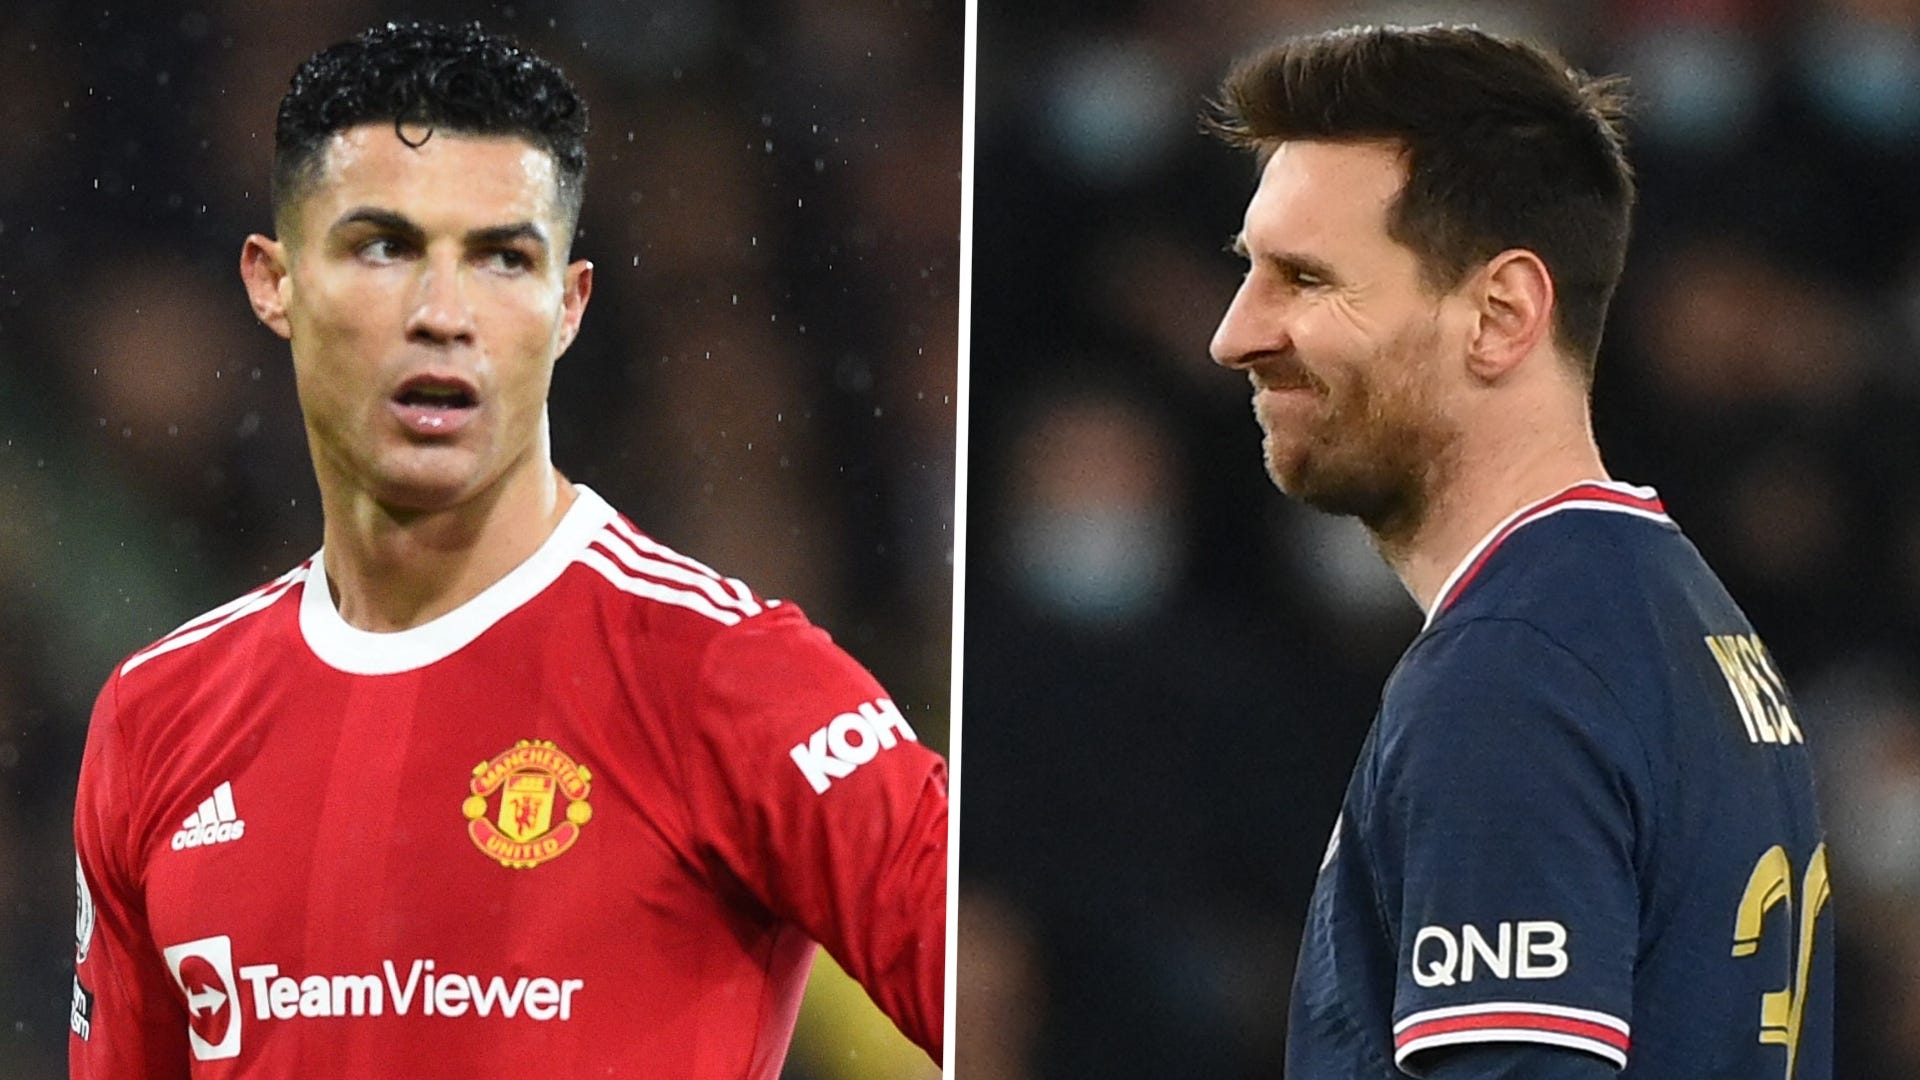 Ronaldo và Messi - những cầu thủ vĩ đại của thế giới bóng đá! Xem ngay hình ảnh của hai ngôi sao này để cảm nhận được sự tài năng và khả năng đột phá của họ trong các trận đấu lịch sử!